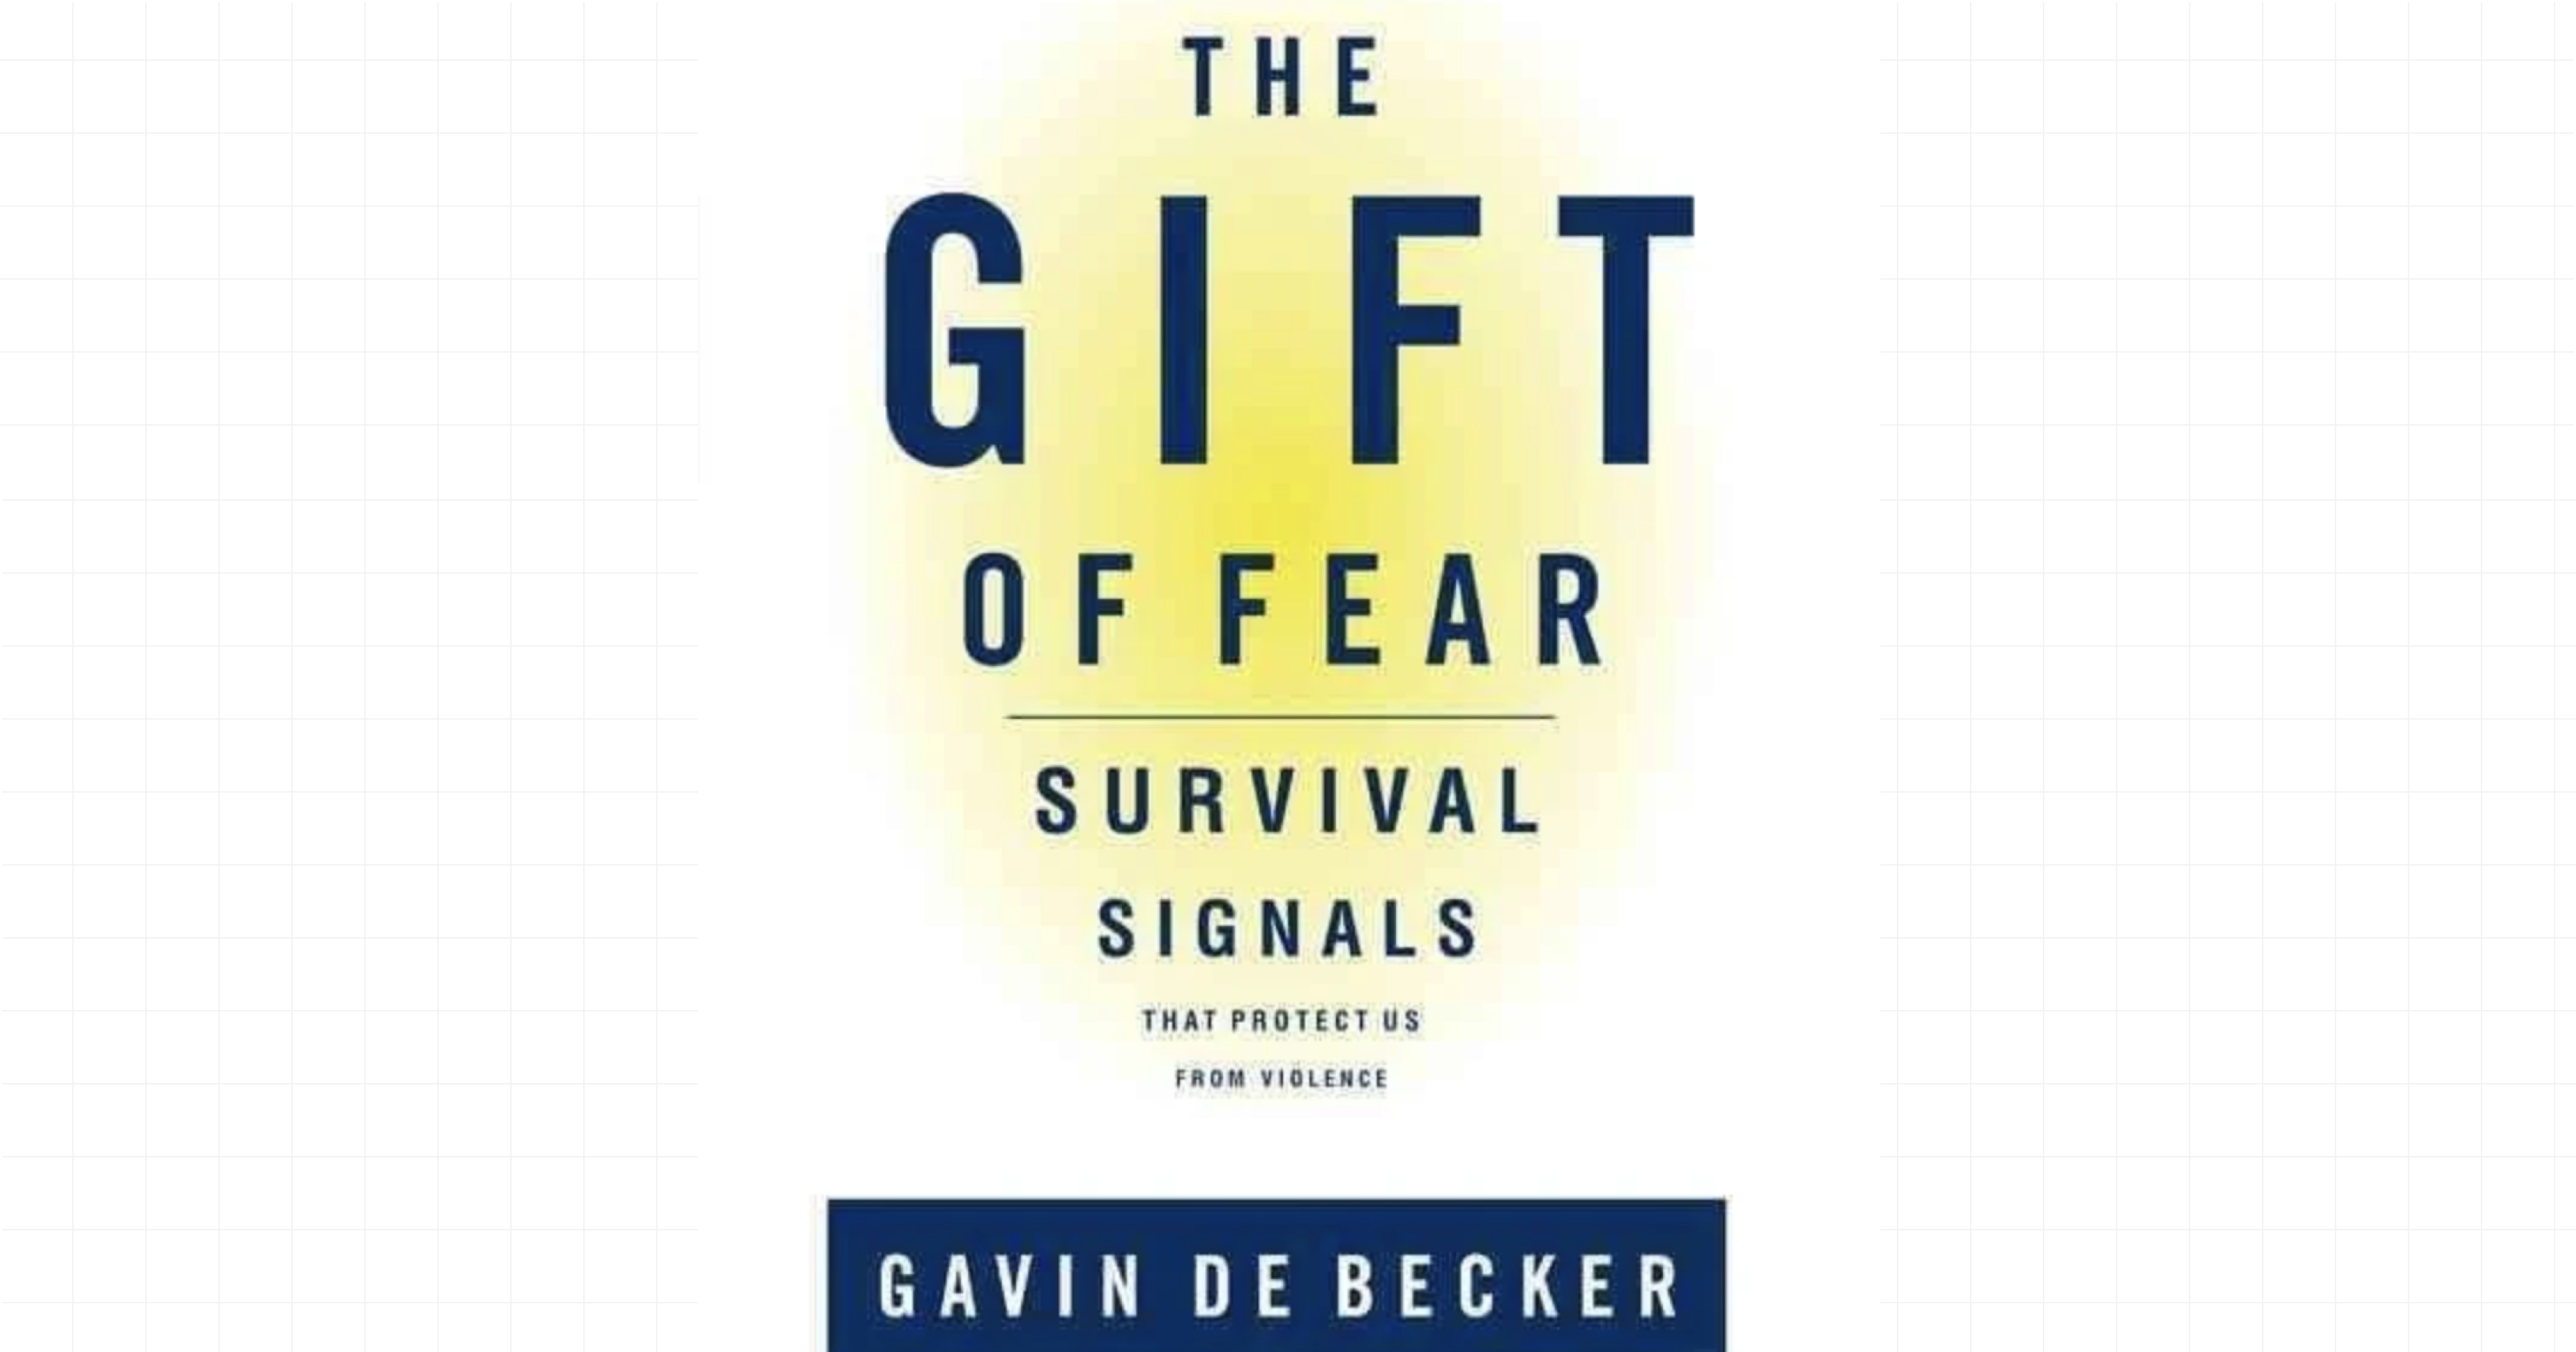 The Gift of Fear by Gavin de Becker